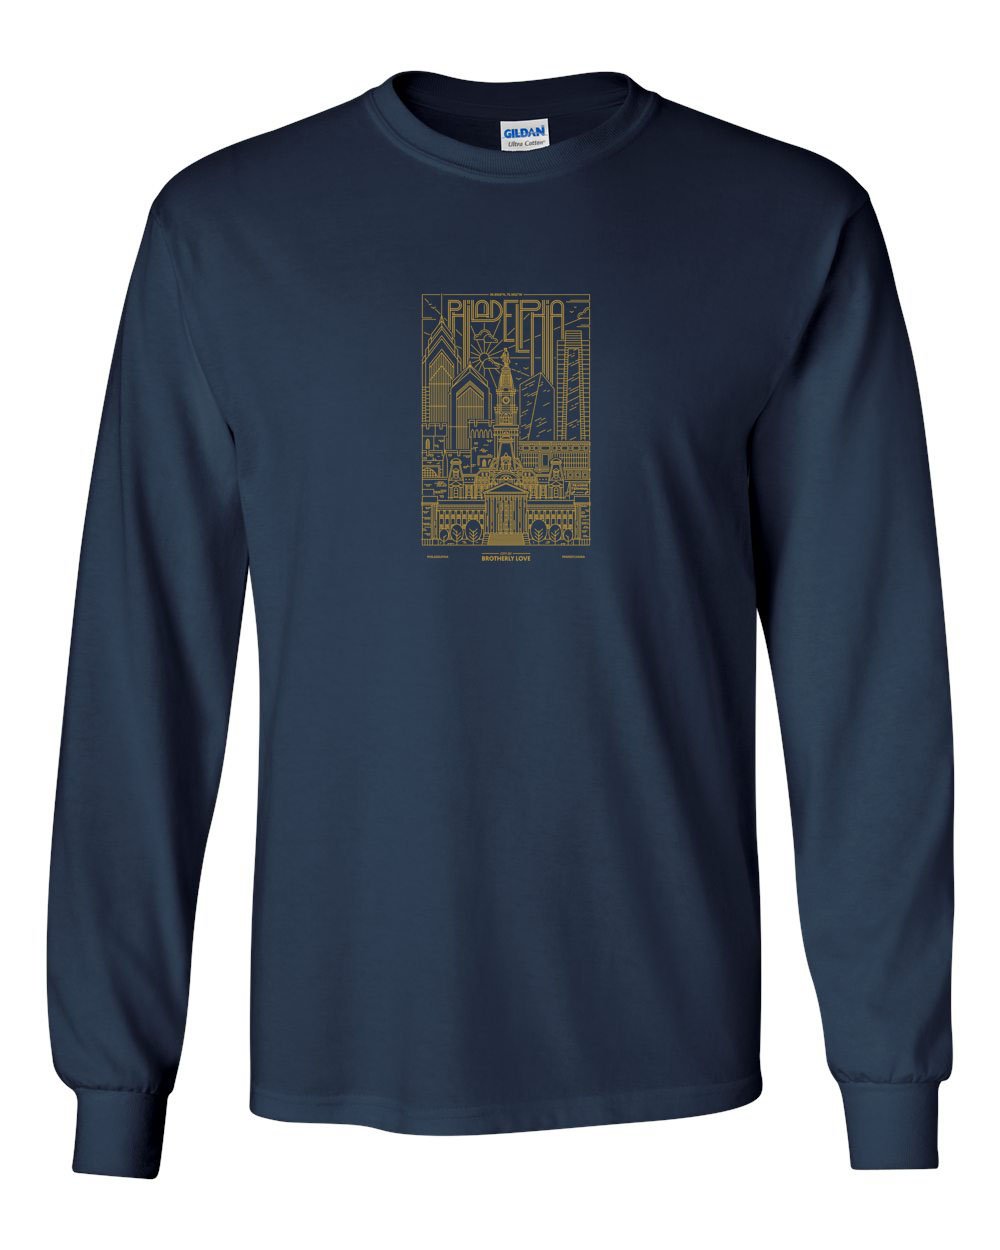 Philadelphia Skyline V2 (Soccer) MENS Long Sleeve Heavy Cotton T-Shirt